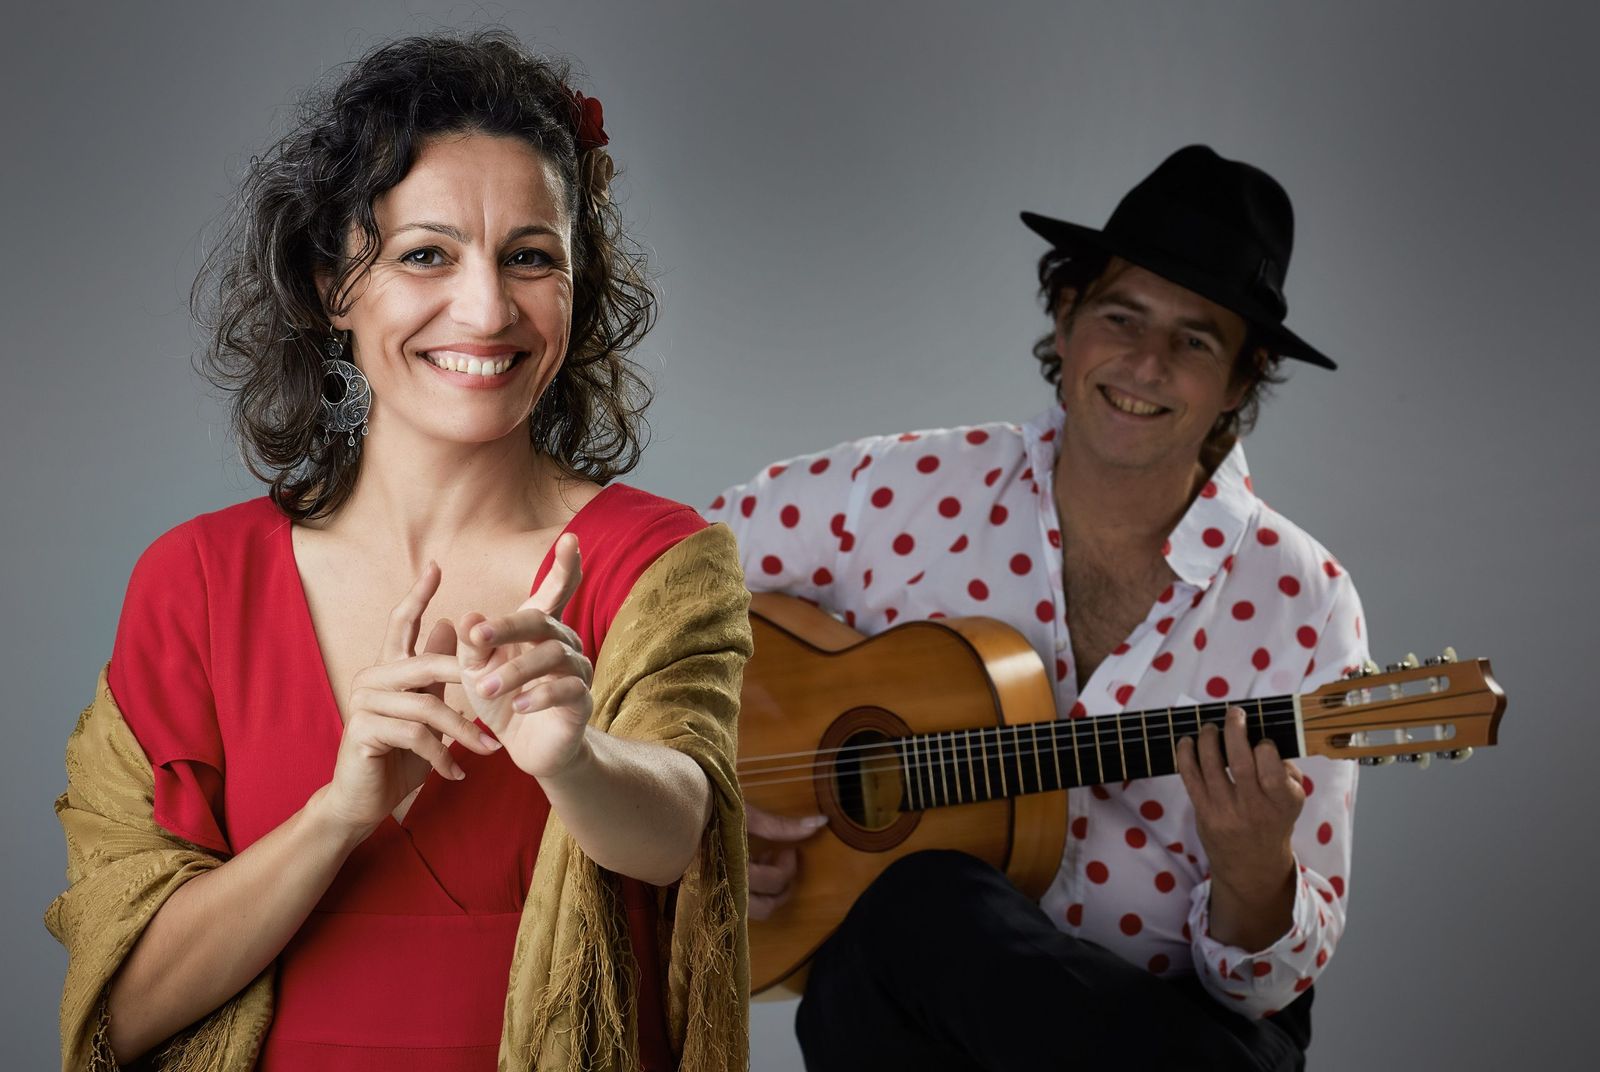 Bestel snel tickets voor dit muzikale duo, Mónica en Manito (gefotografeerd door Edwin Huizinga) en geniet van een lichtvoetige liedjesavond met hun 'Melodías del Corazon'.